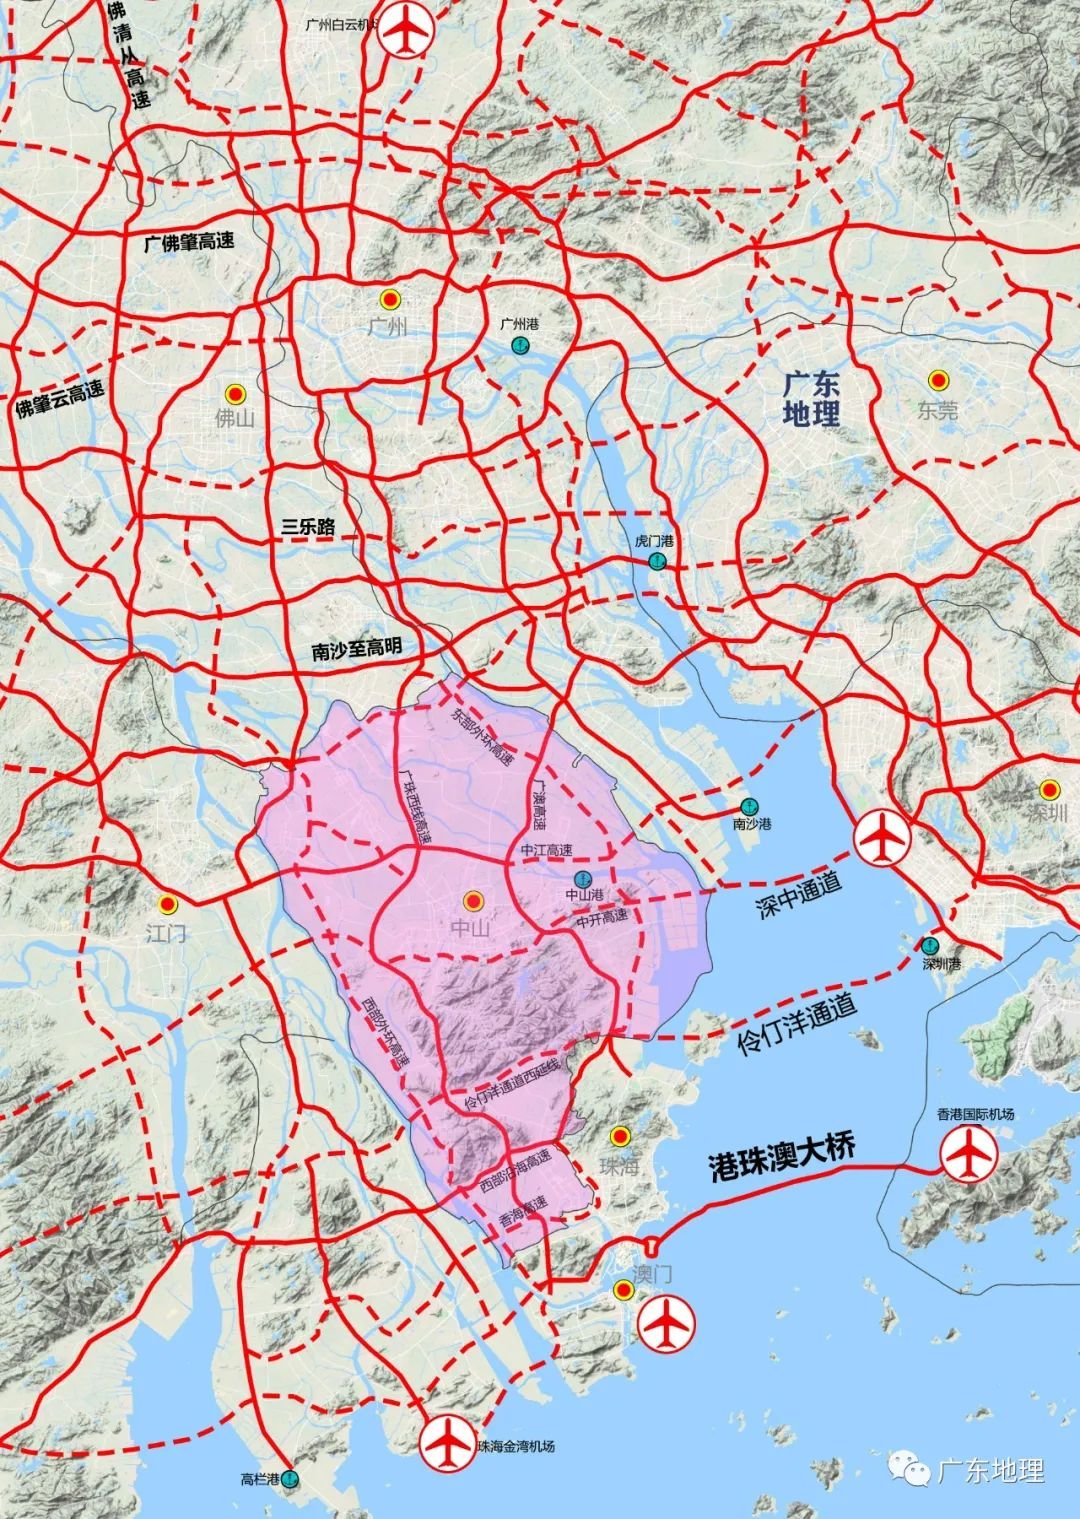 大湾区做强内湾,广州18号线南延促四大片区开发